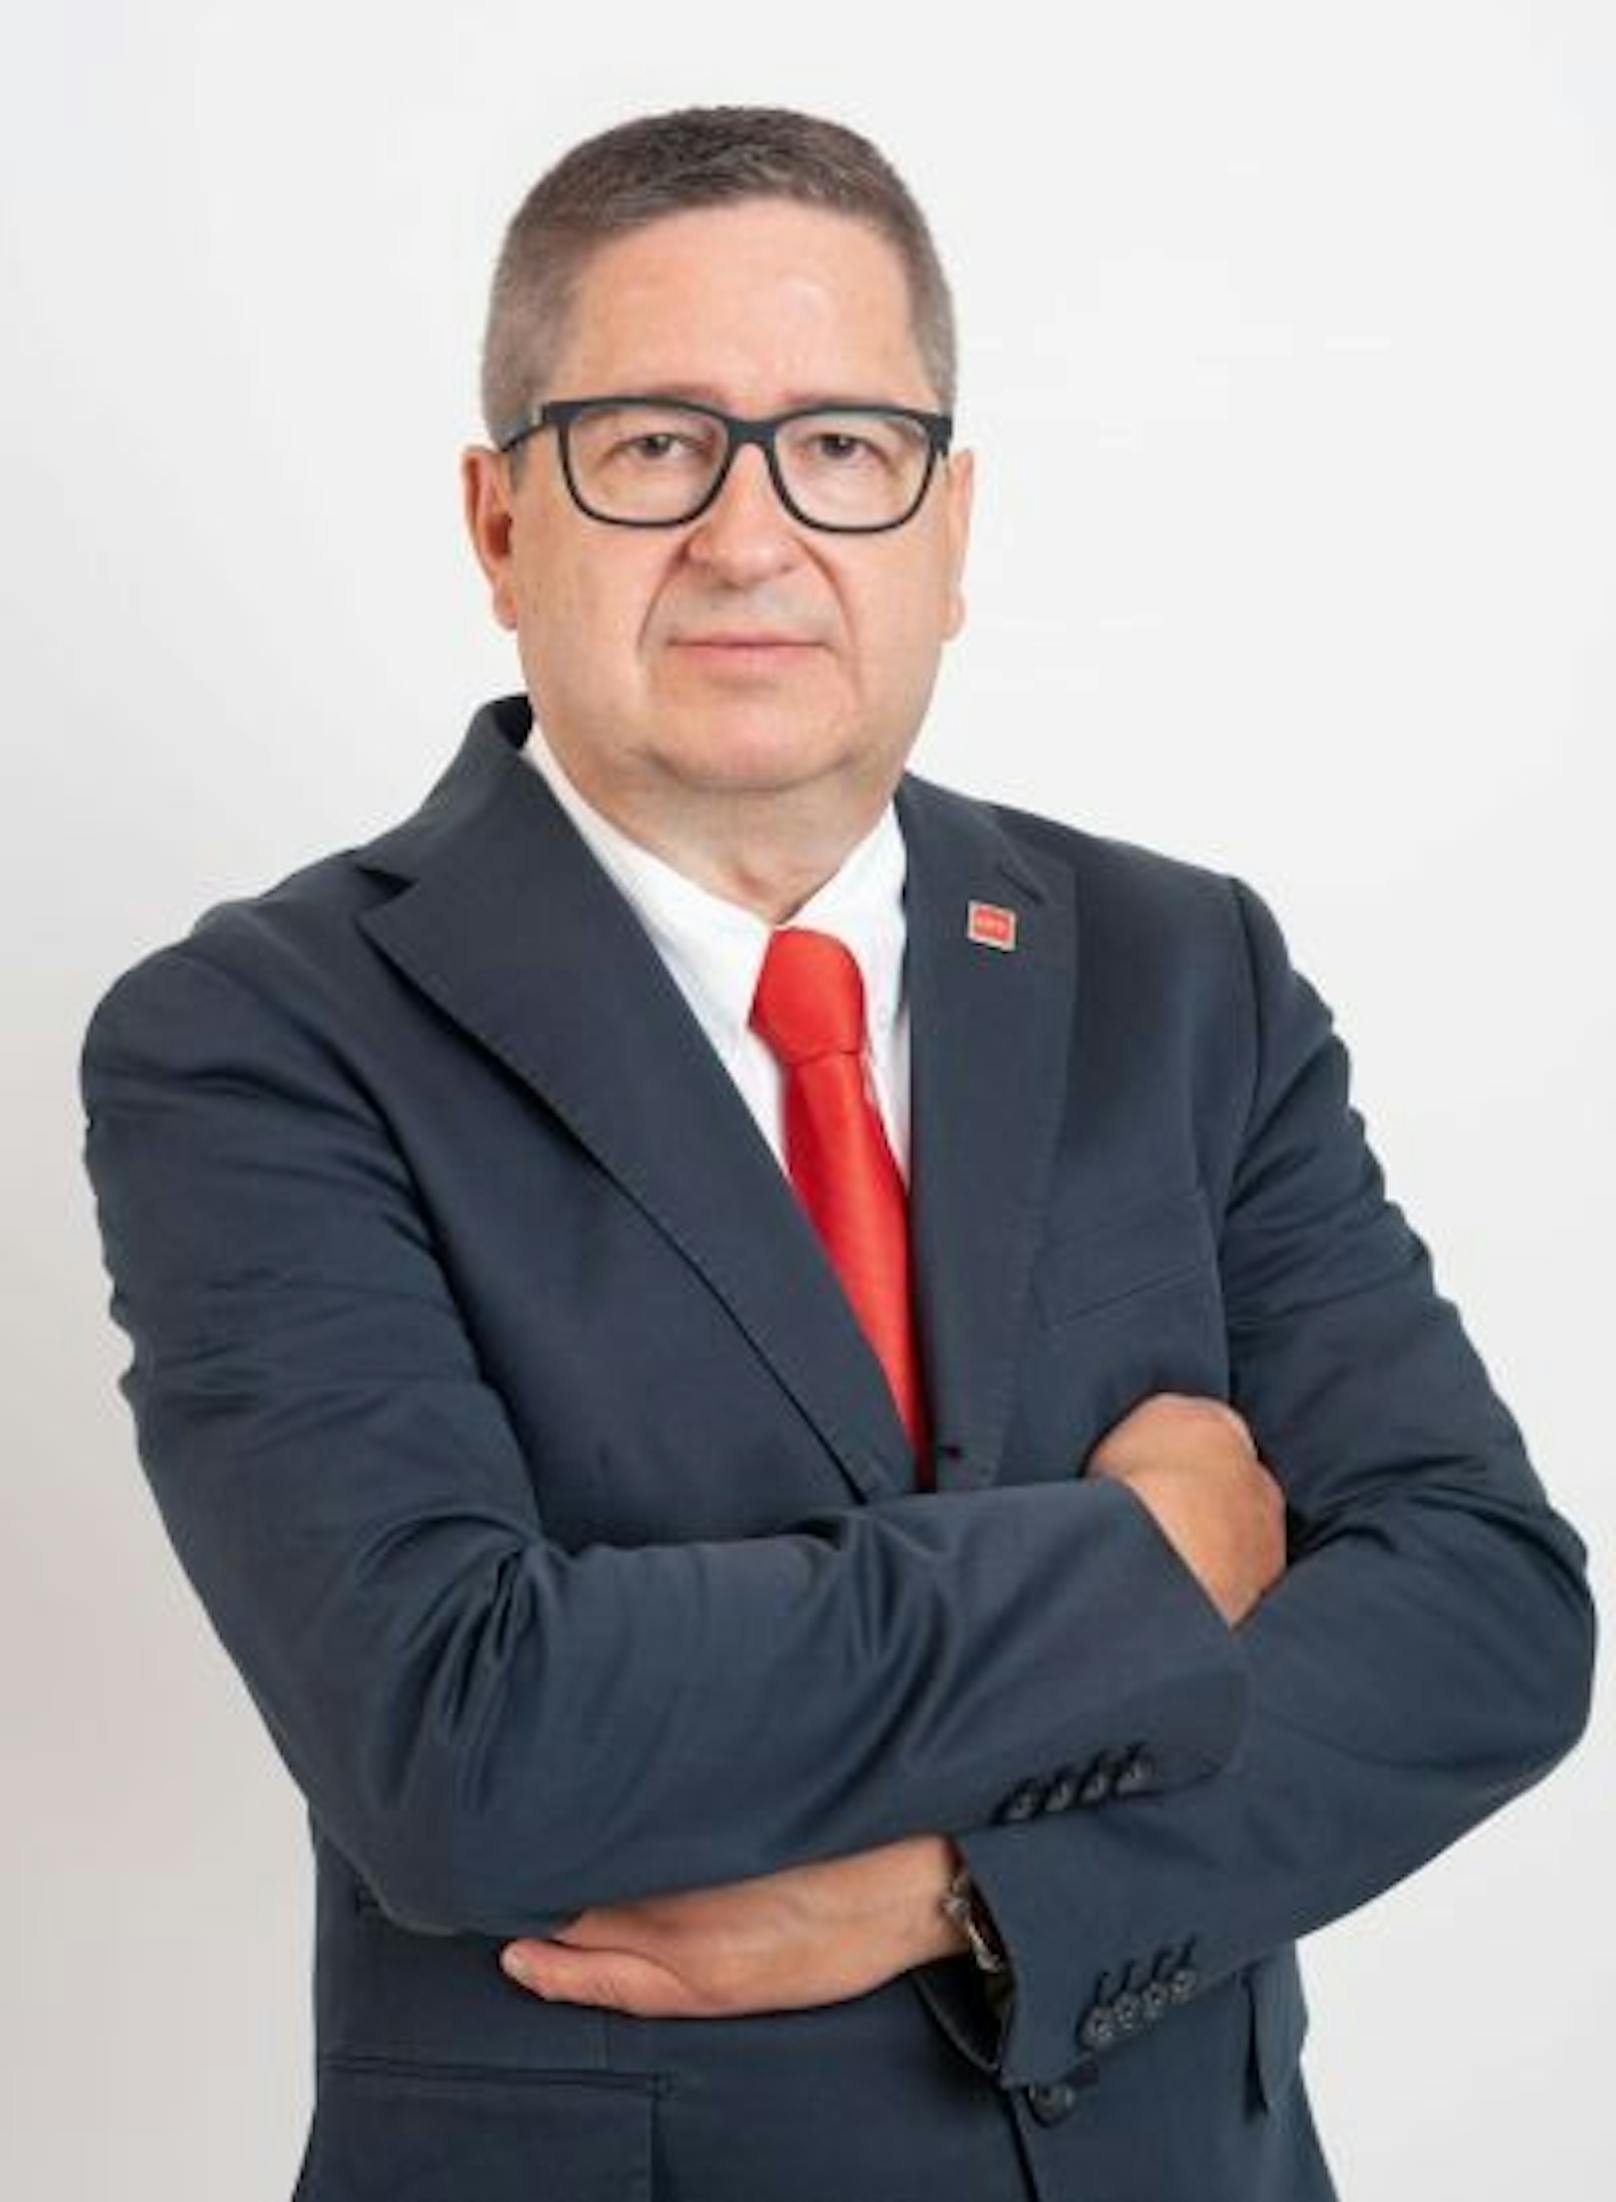 Thomas Schaden ist Präsident des Sozialdemokratischen Wirtschaftsverbandes NÖ.